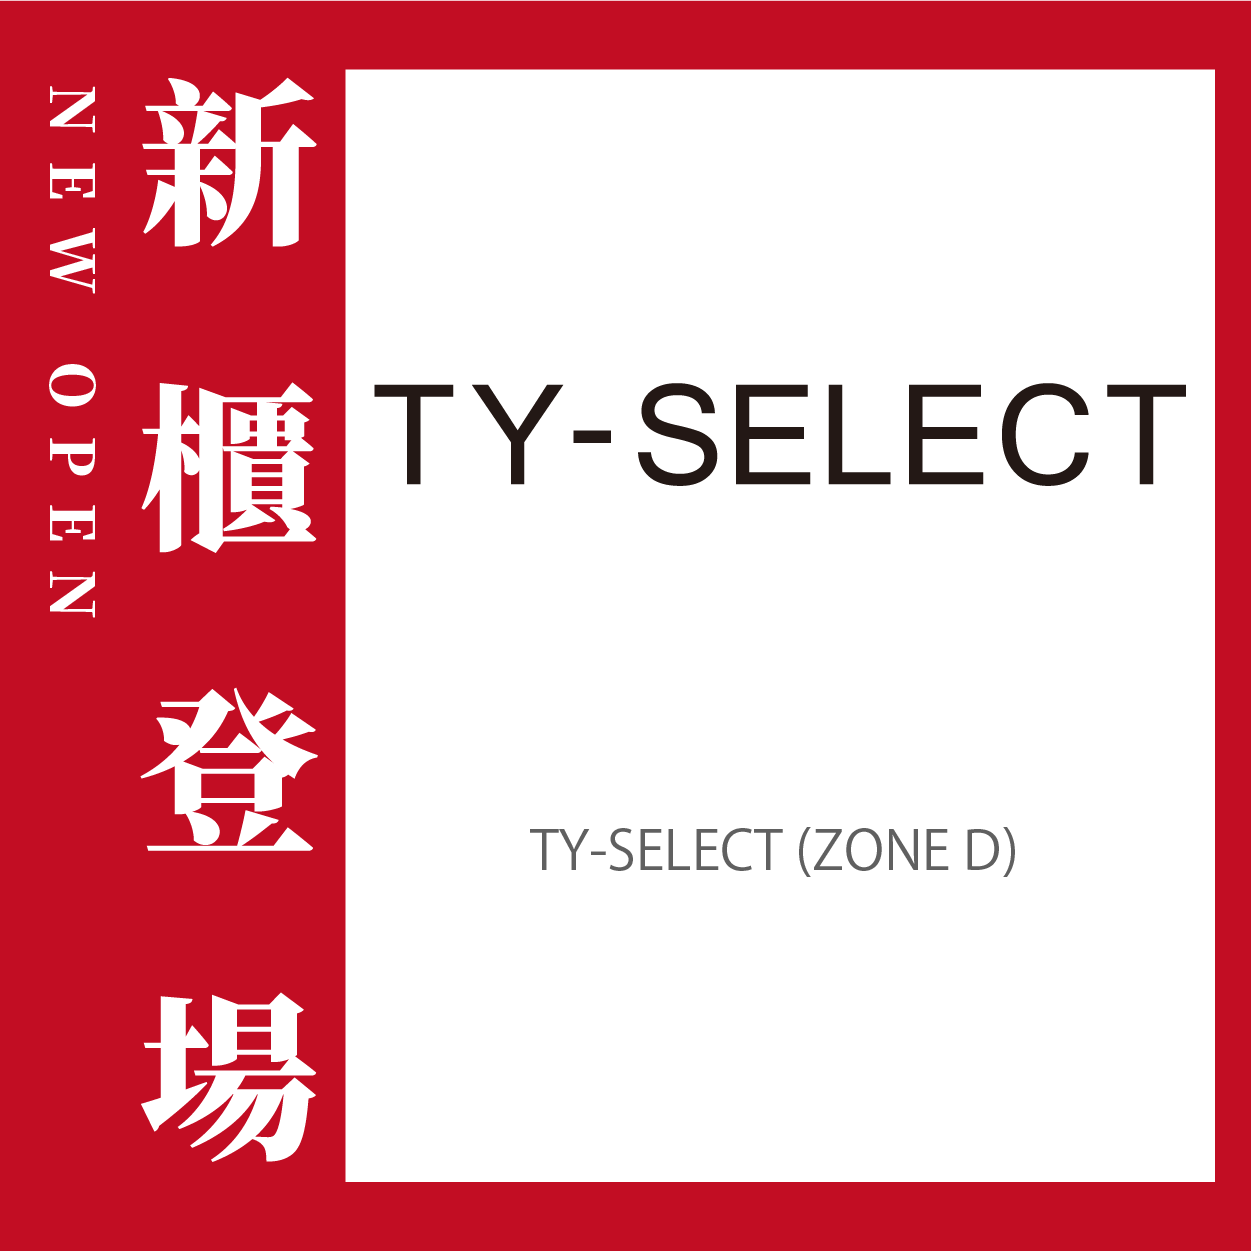 T.Y. Select盛大開幕